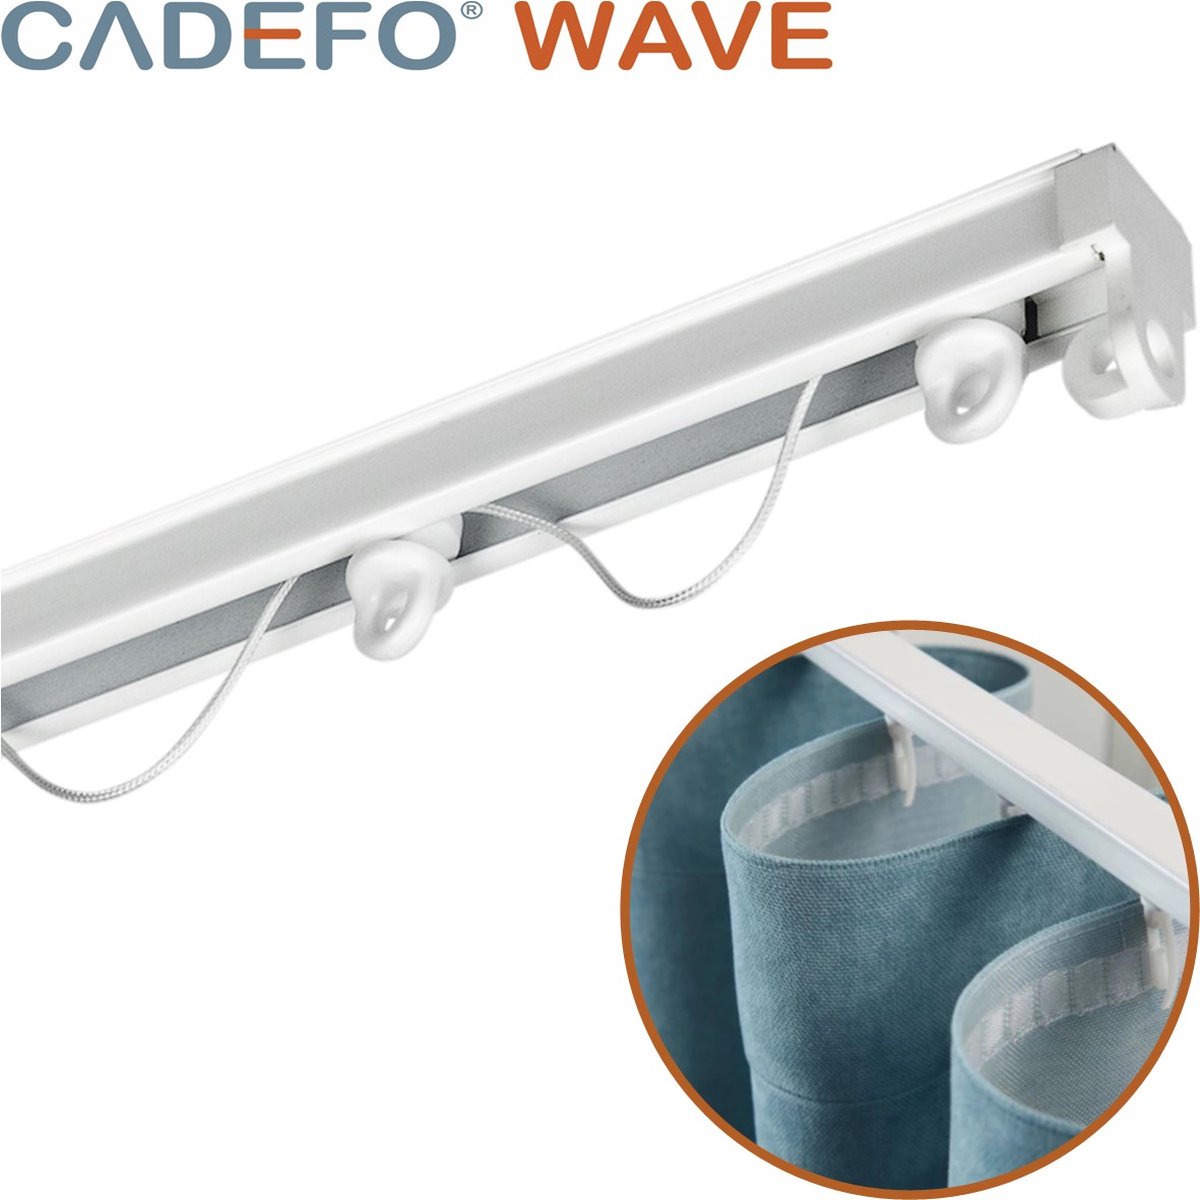 CADEFO WAVE (451 - 500 cm) Gordijnrails - Compleet op maat! - UIT 1 STUK - Leverbaar tot 6 meter - Plafondbevestiging - Lengte 467 cm